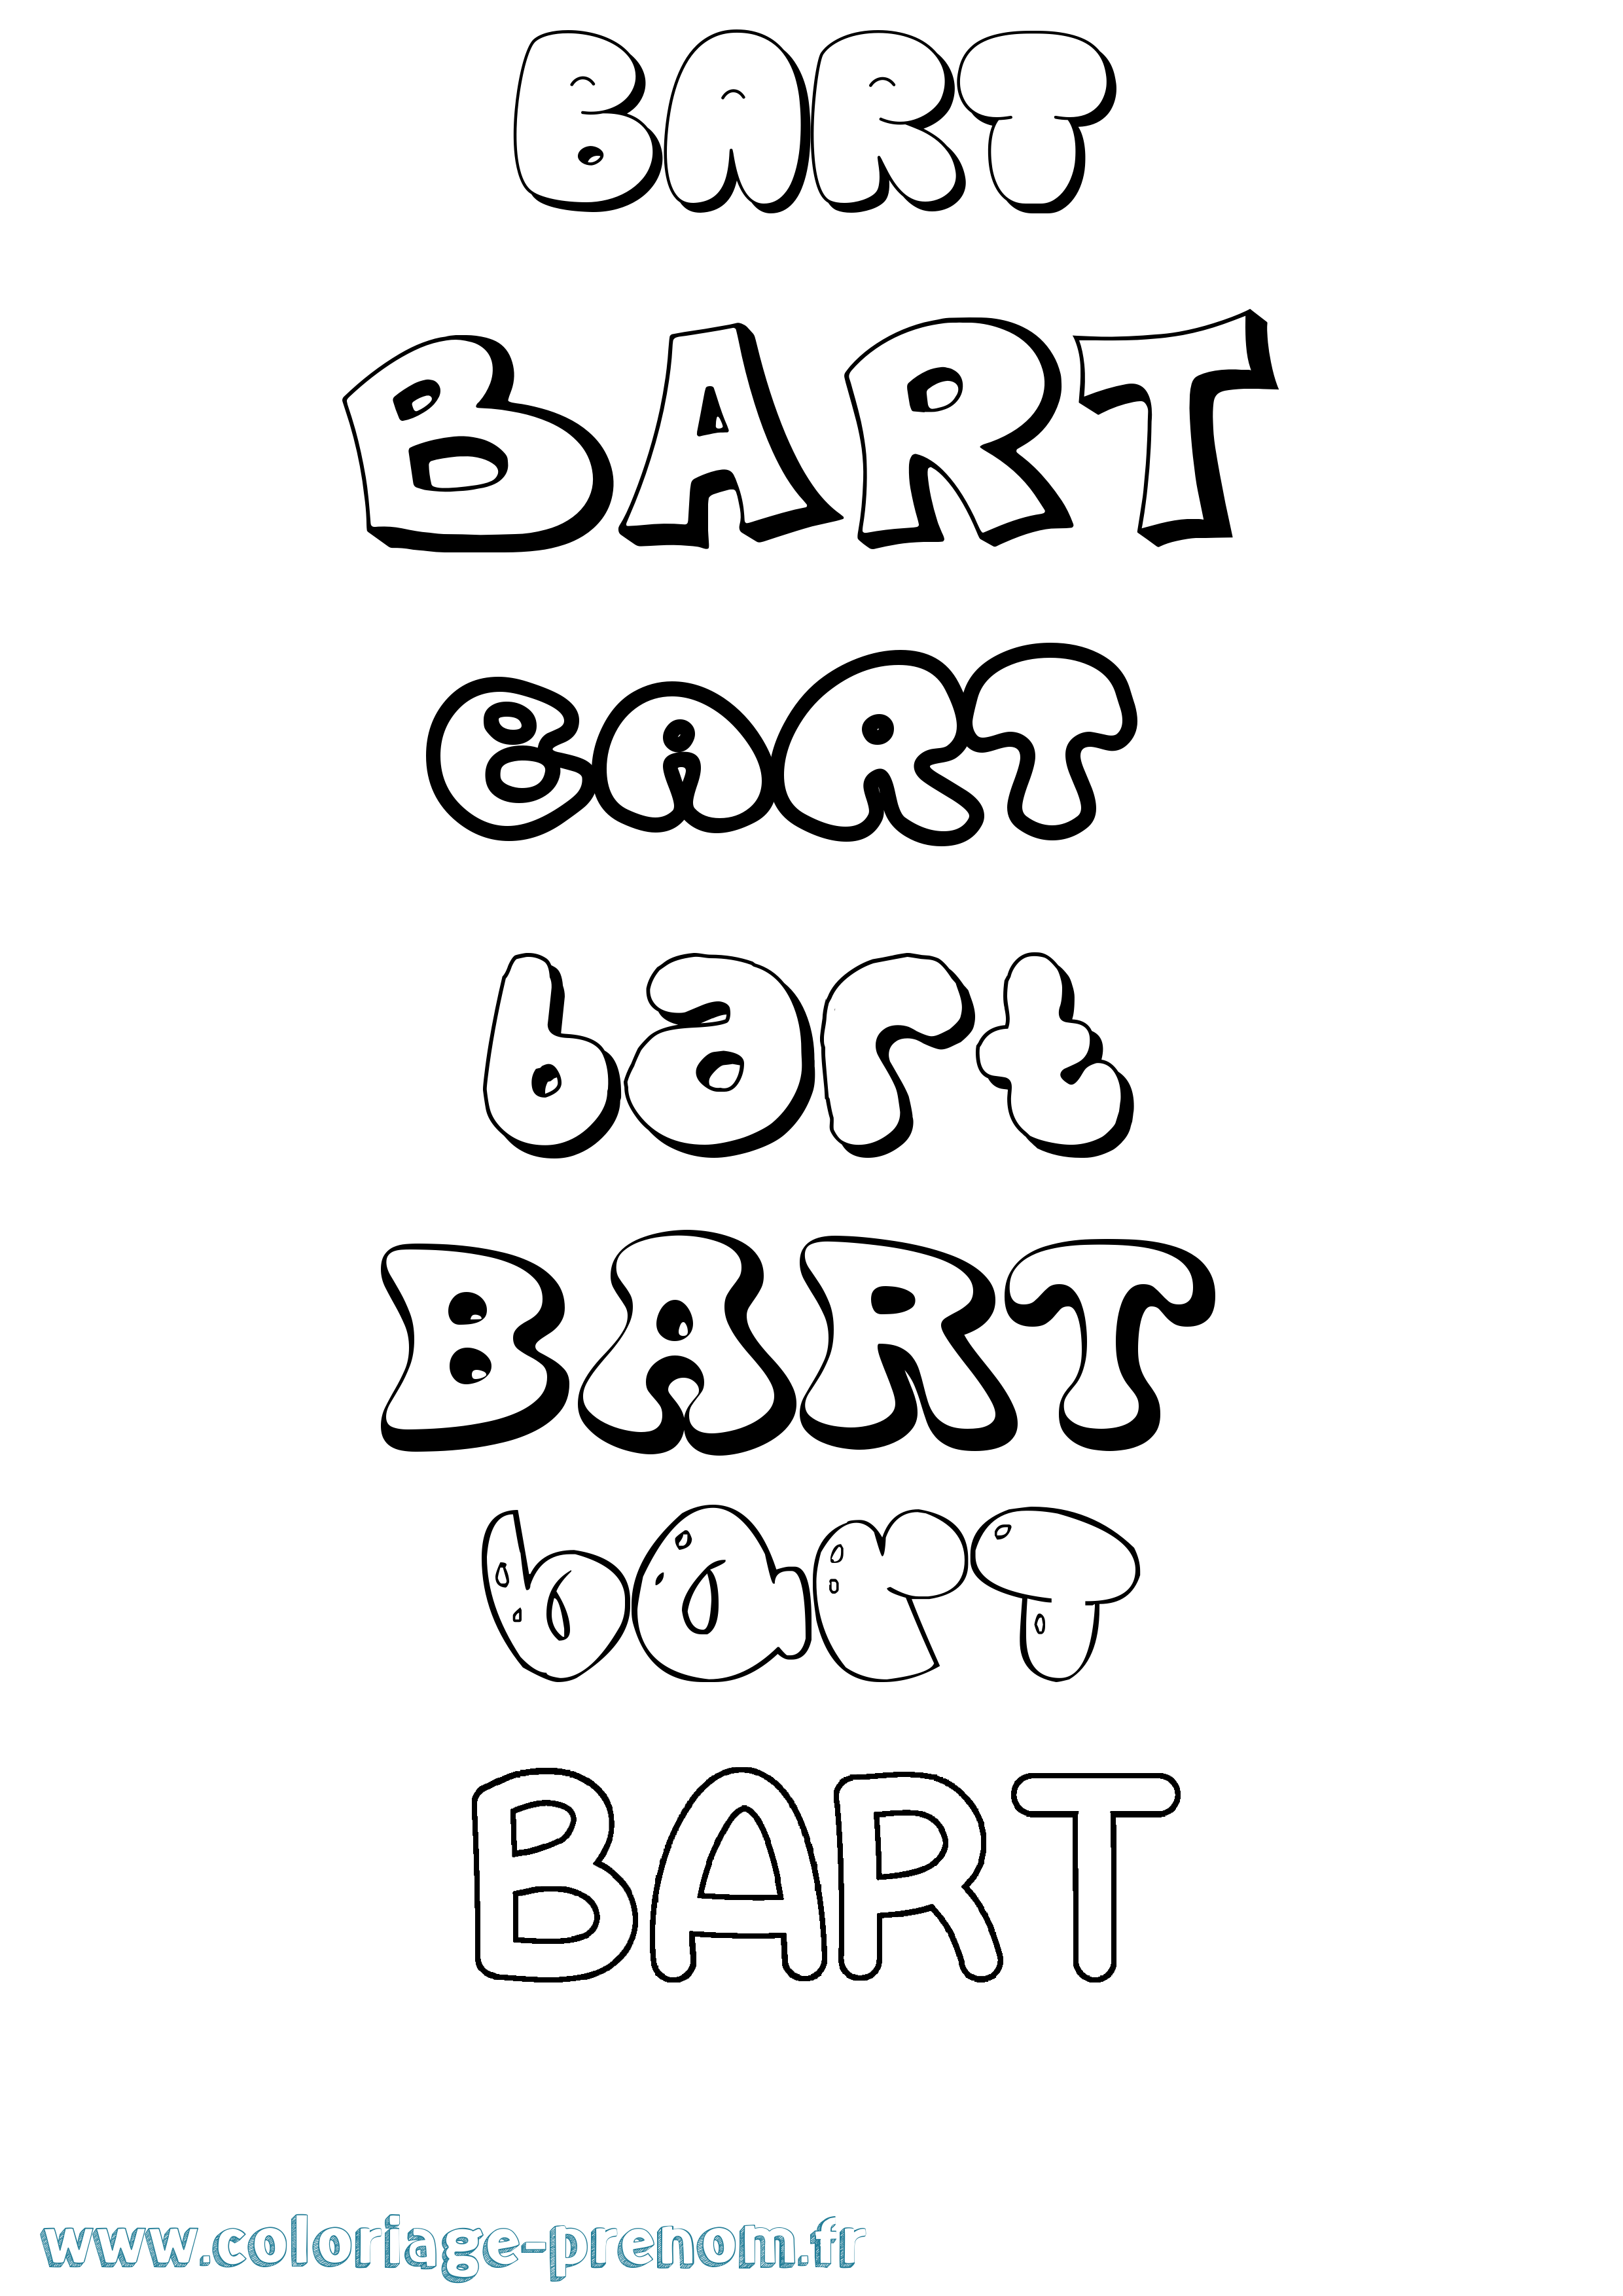 Coloriage prénom Bart Bubble